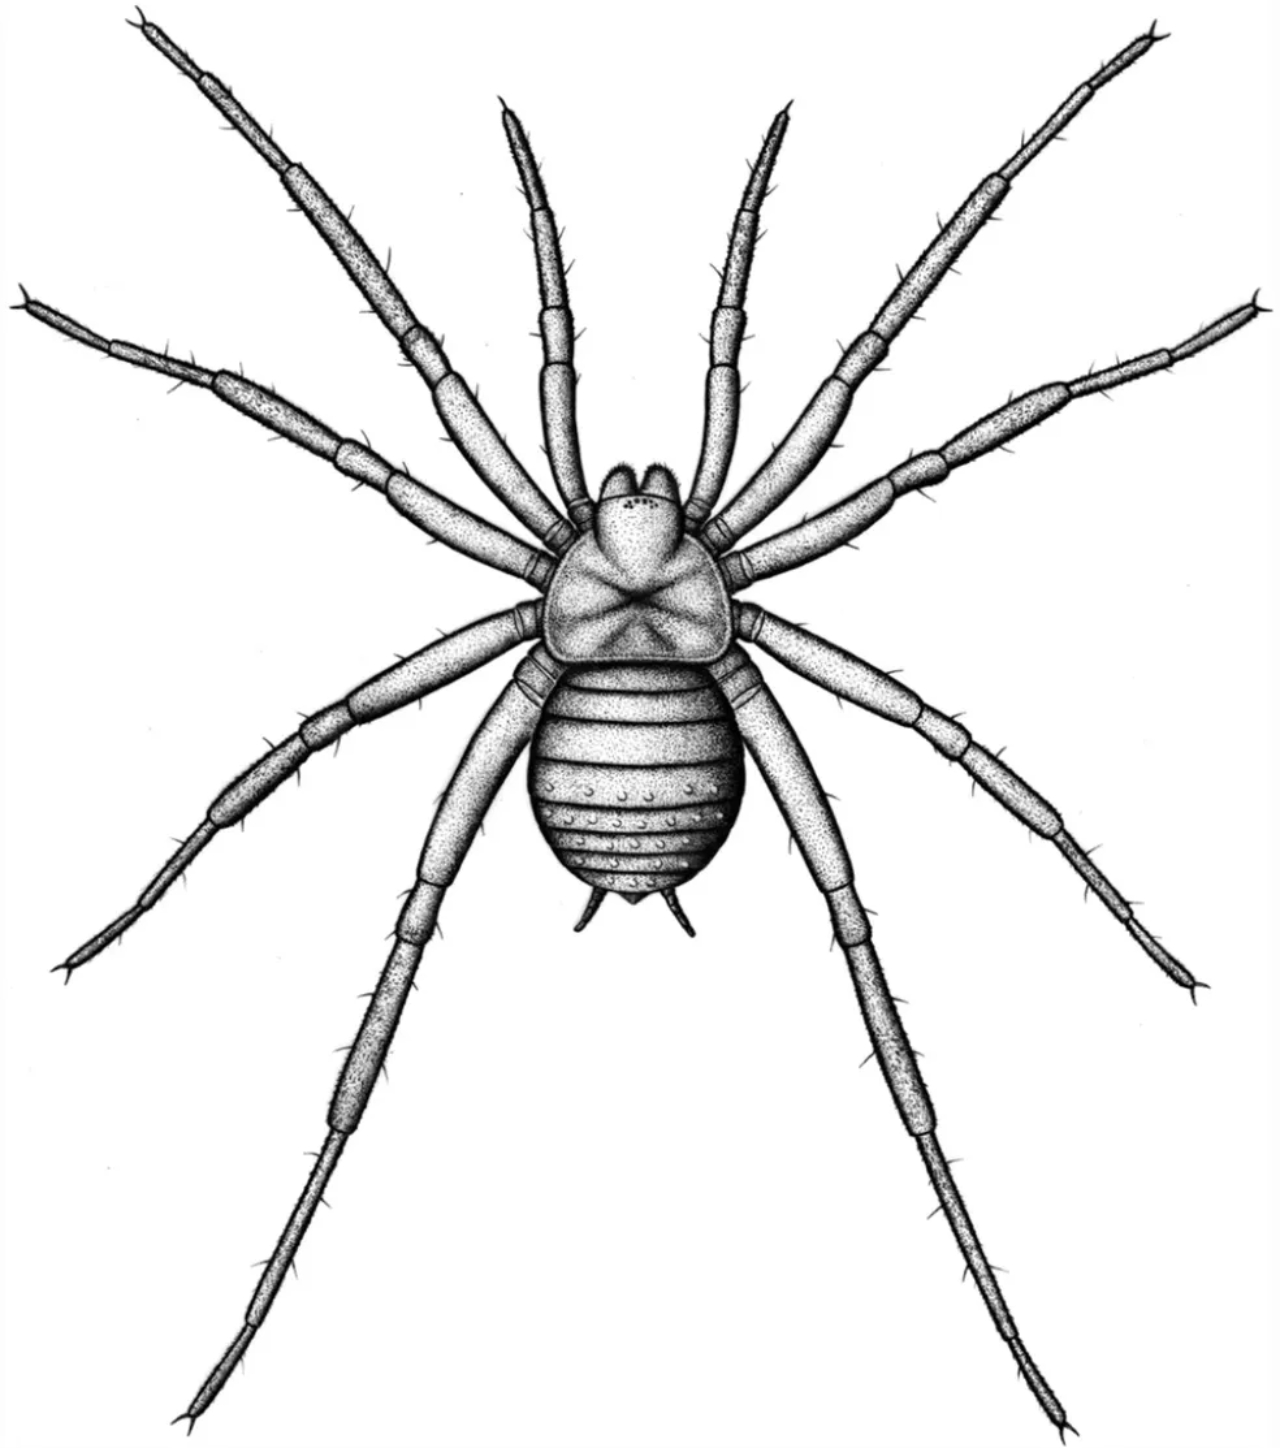 Ilustração de como seria a aranha recém-descoberta na Alemanha